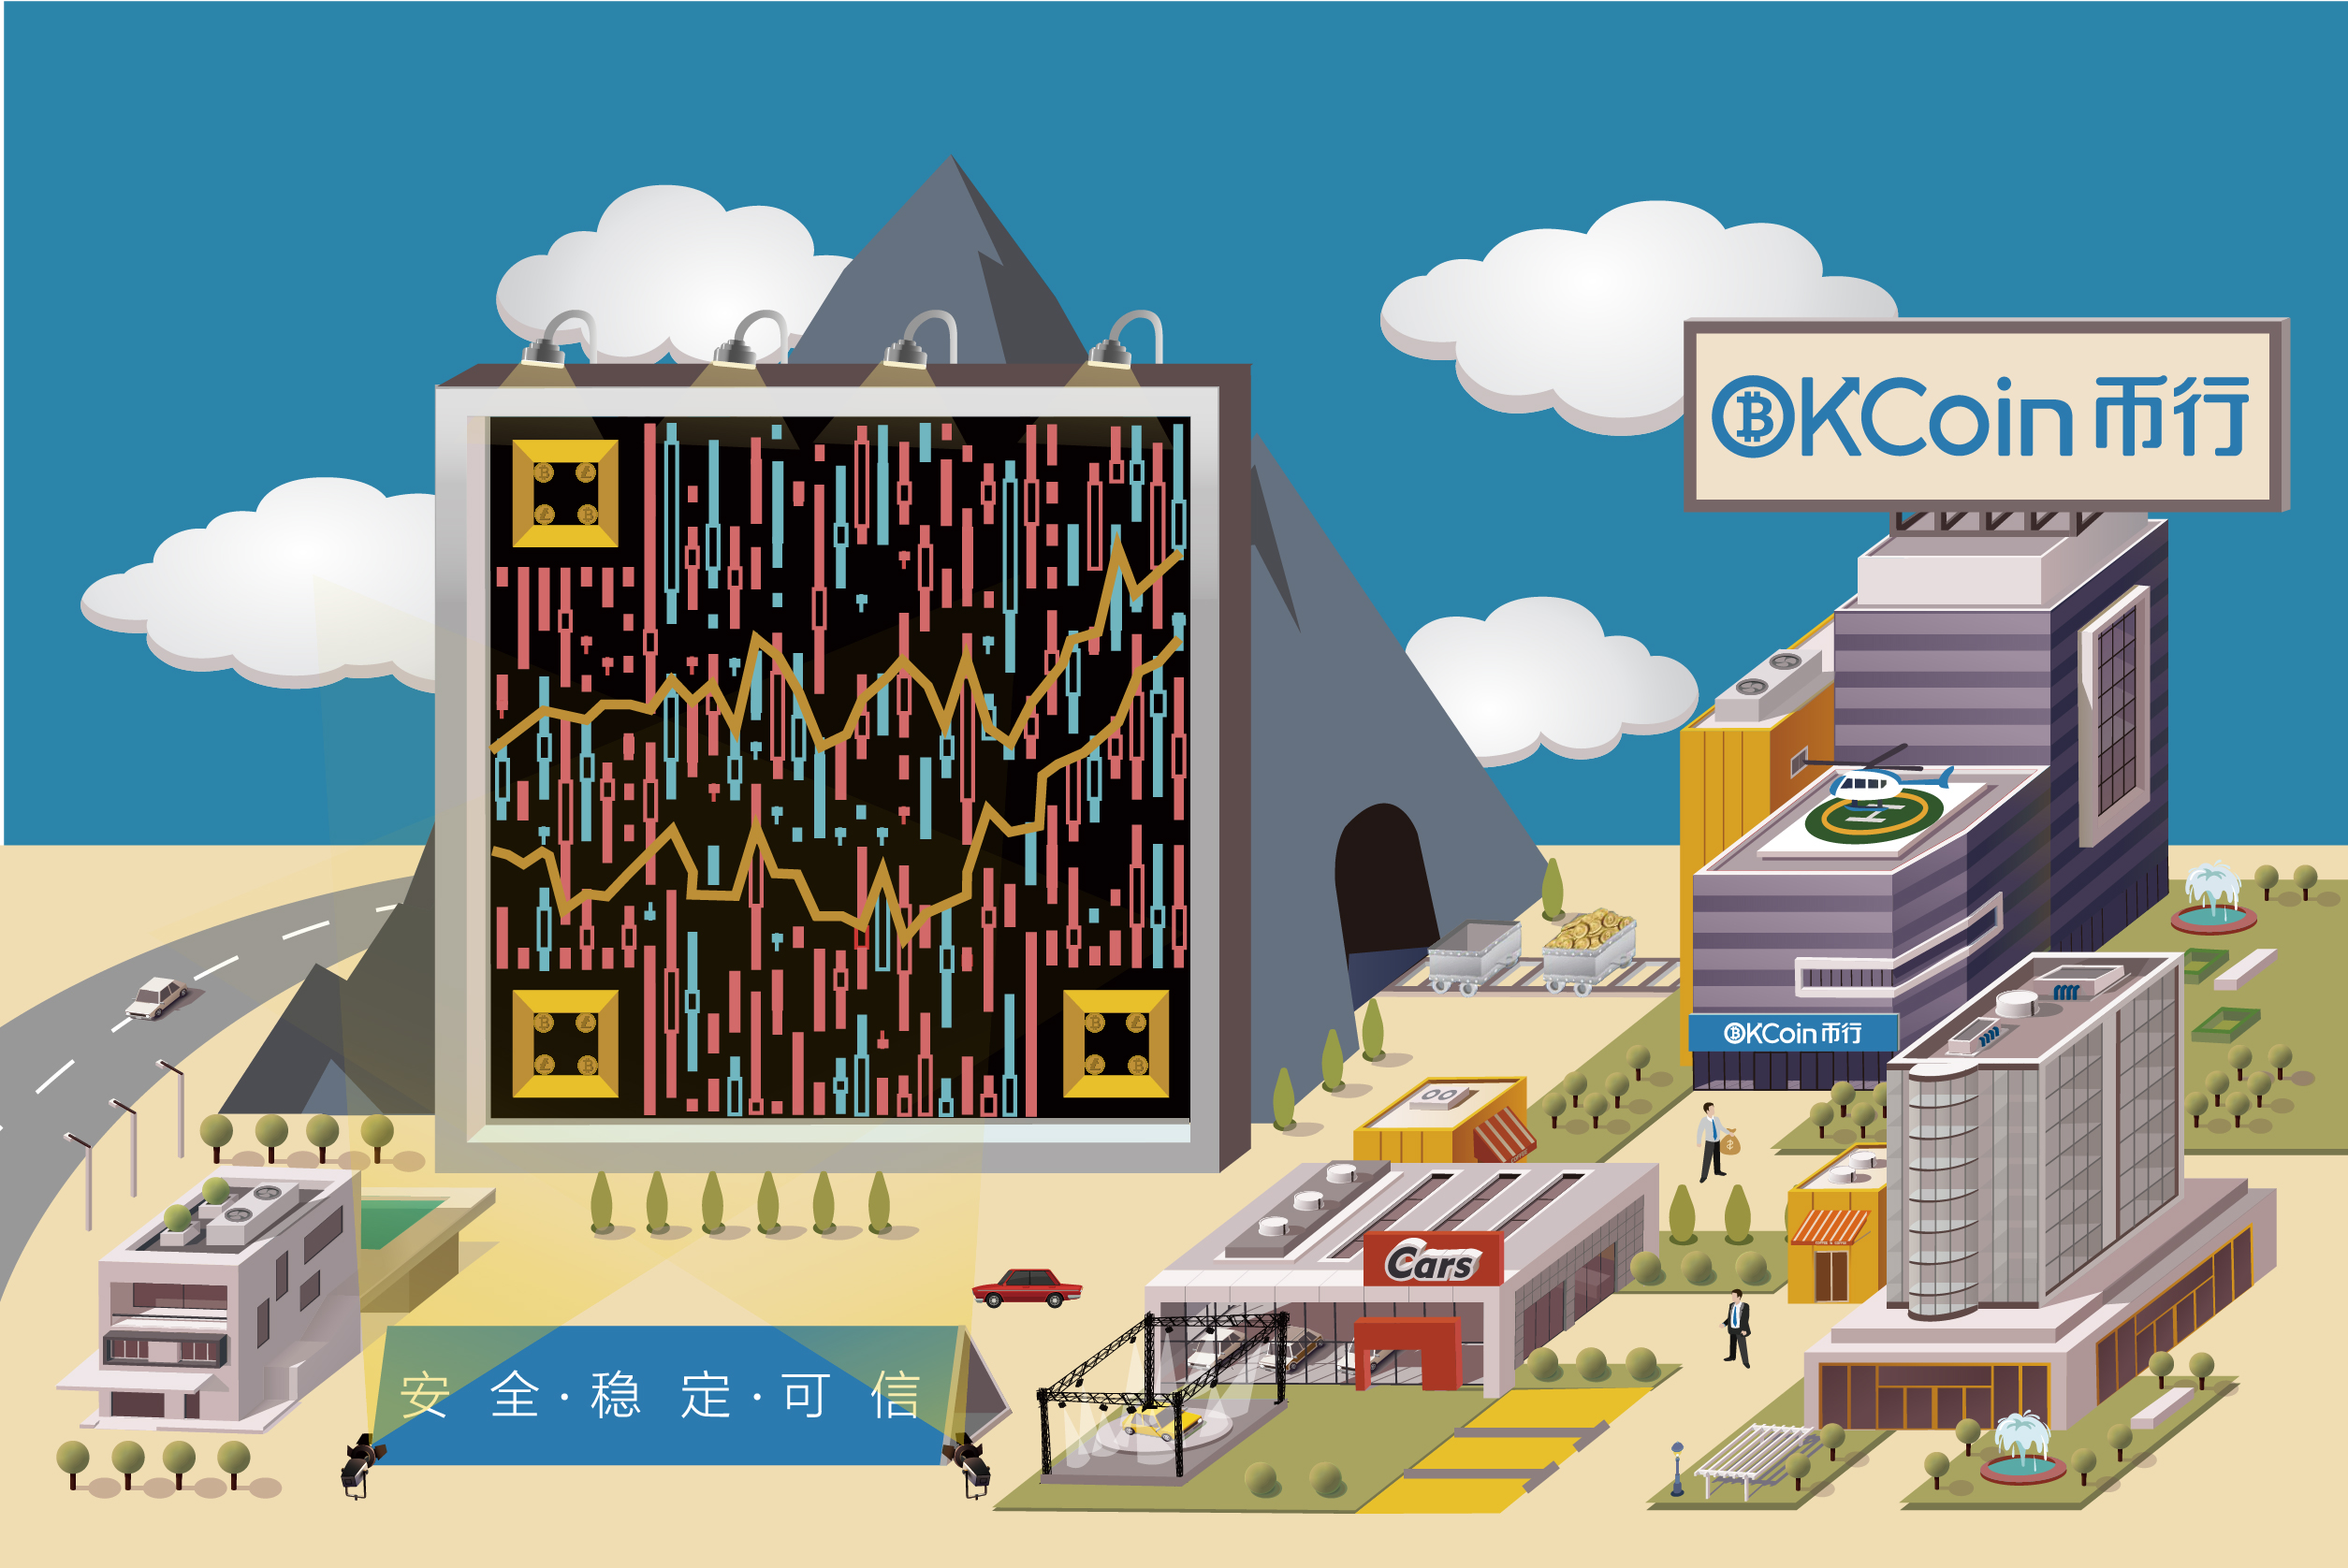 OKCOIN币行平面静态艺术二维码创意二维码-第九工场设计外包